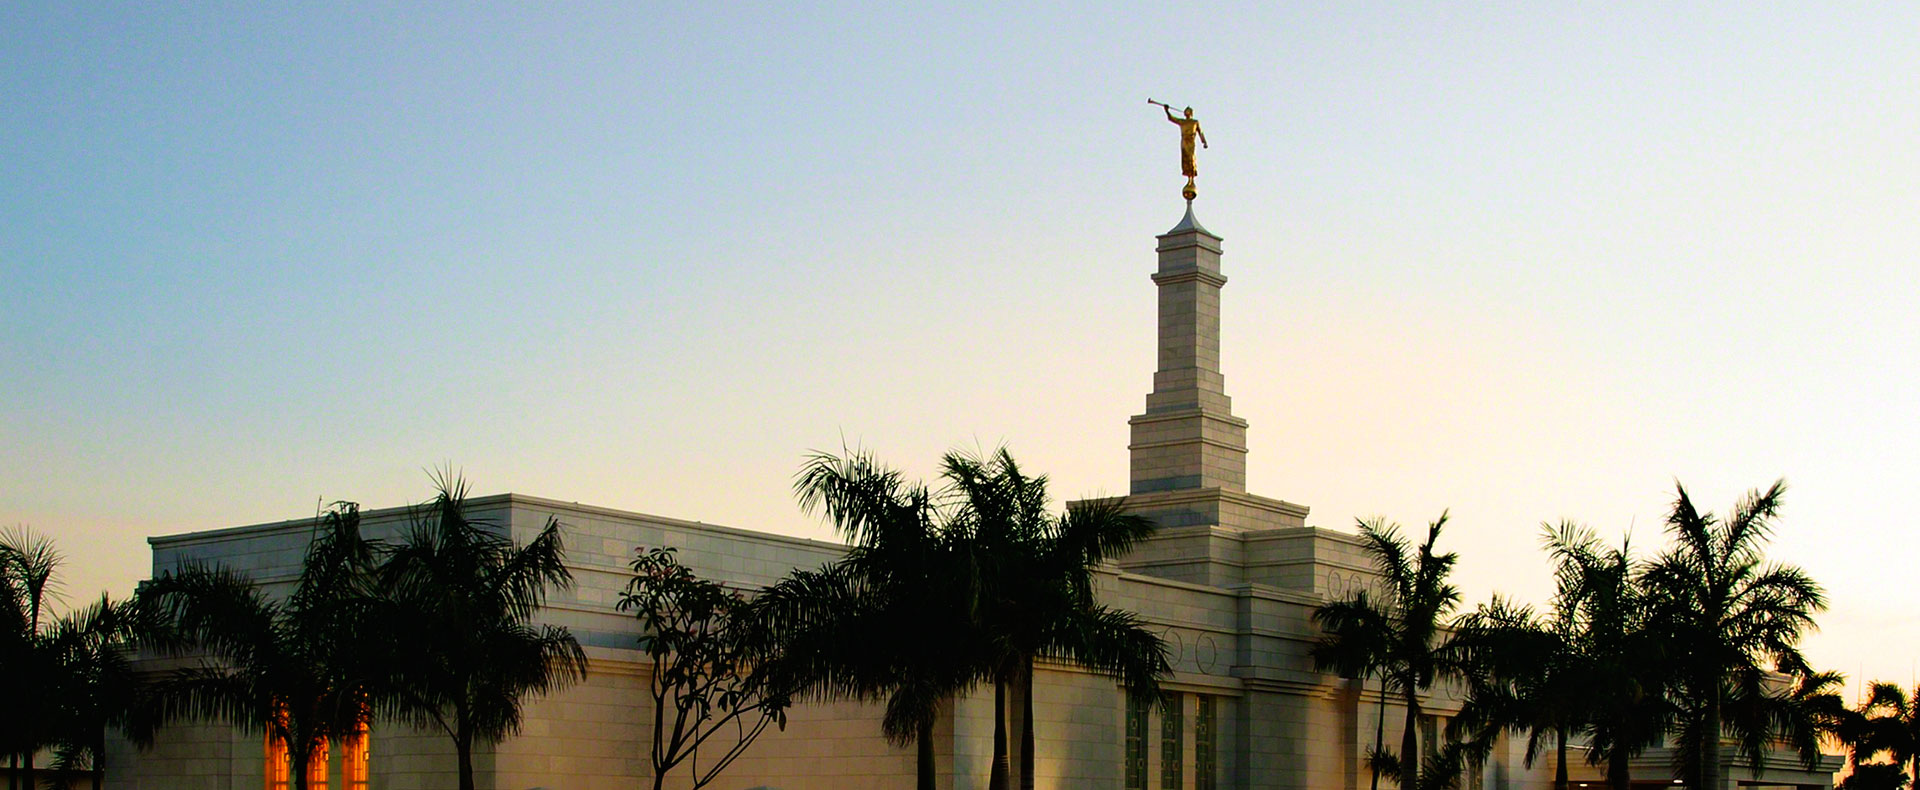 Hermosillo Sonora Mexico Temple